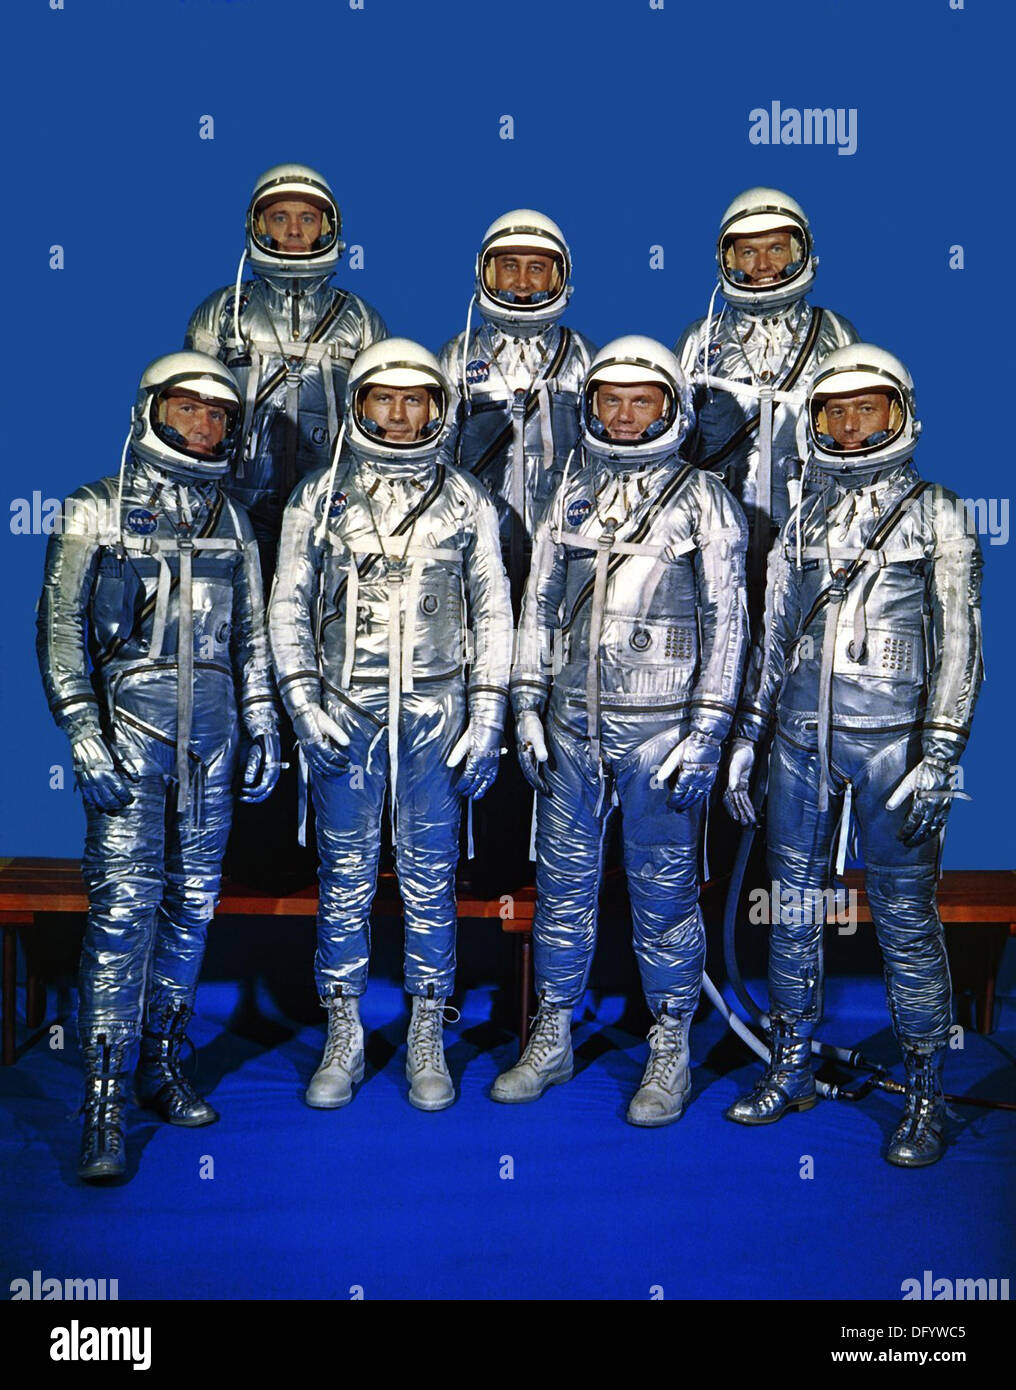 Das Gruppenbild der ursprünglichen sieben Astronauten für die Mercury-Projekt 27. April 1959 in Houston, Texas. Von links nach rechts vorne: Walter M. Wally Schirra, Donald K. Deke Slayton, John H. Glenn, Jr., und Scott Carpenter. Von links nach rechts hinten: Alan B. Shepard, Virgil I. Gus Grissom und L. Gordon Cooper, Jr. Carpenter, einer der ursprünglichen Quecksilber sieben Astronauten und der zweite Amerikaner, um die Erde zu umkreisen starb 10. Oktober 2013 im Alter von 88 Jahren. Stockfoto